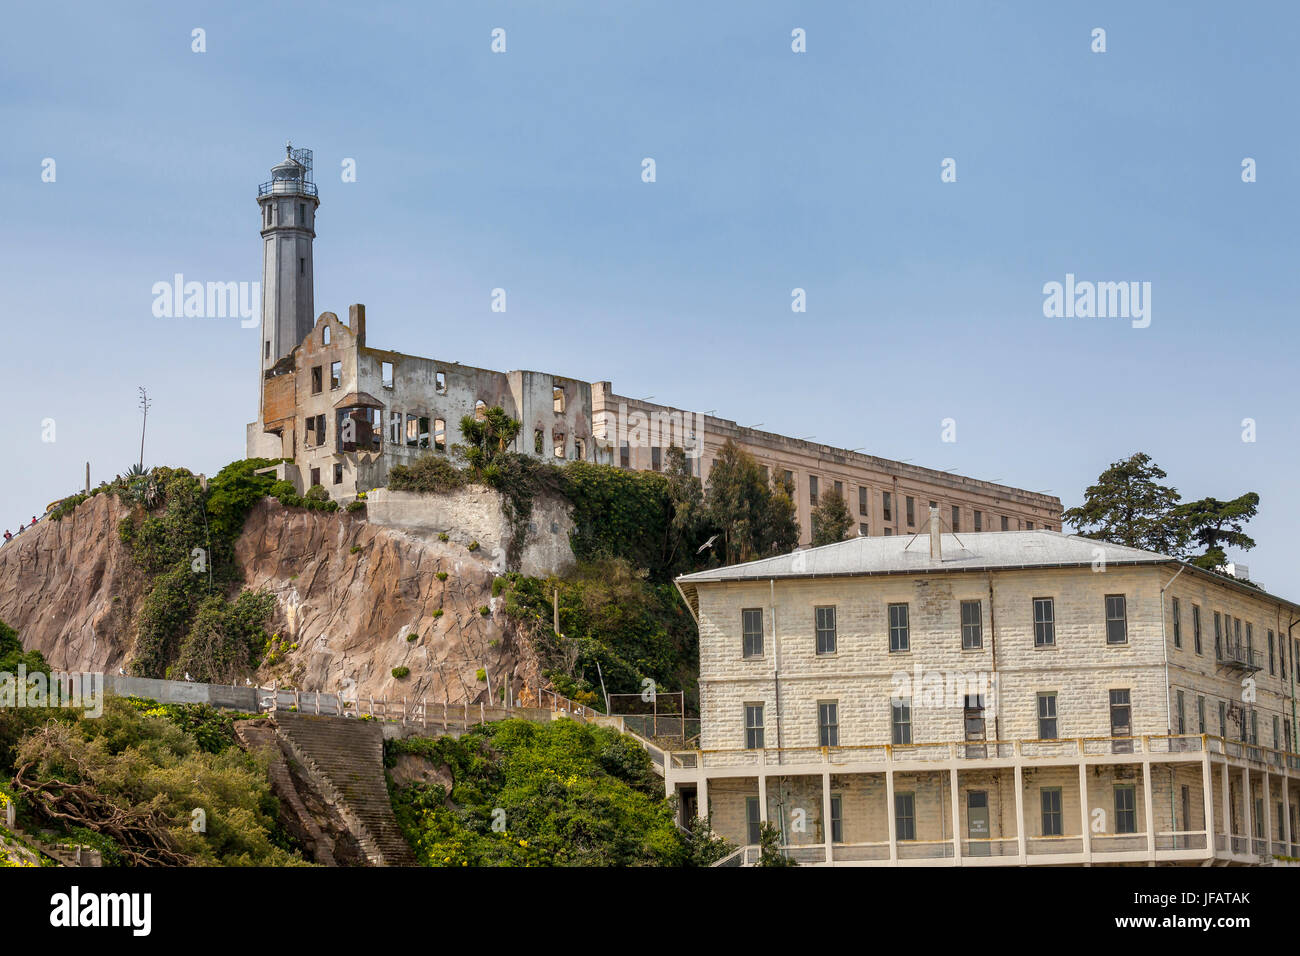 Alcatraz penitentiary, San Francisco, California, USA Stock Photo